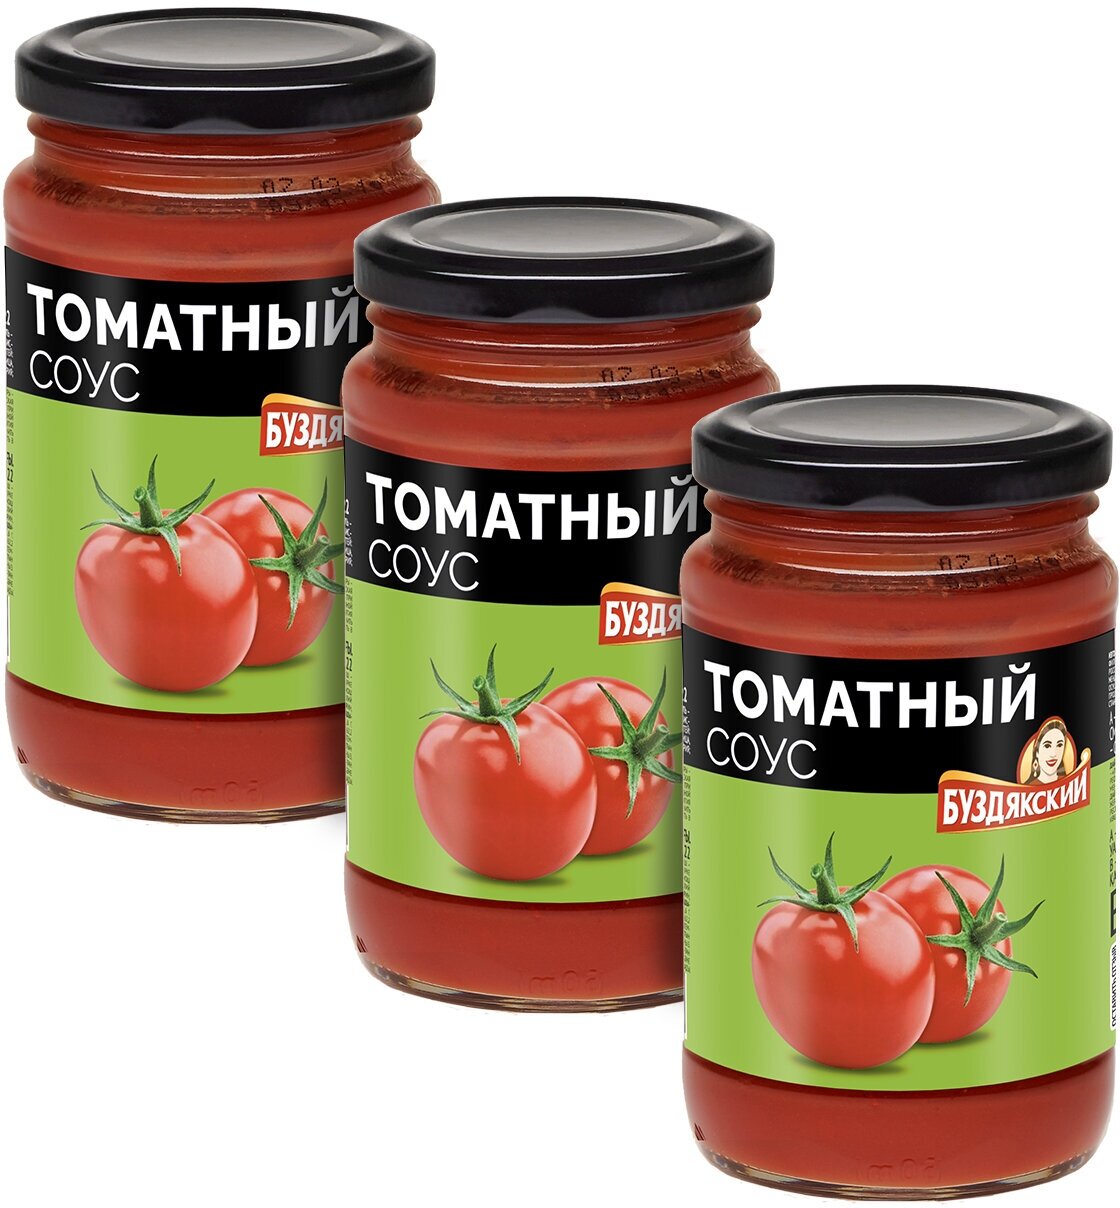 Соус томатный Буздякский, 350г х 3шт